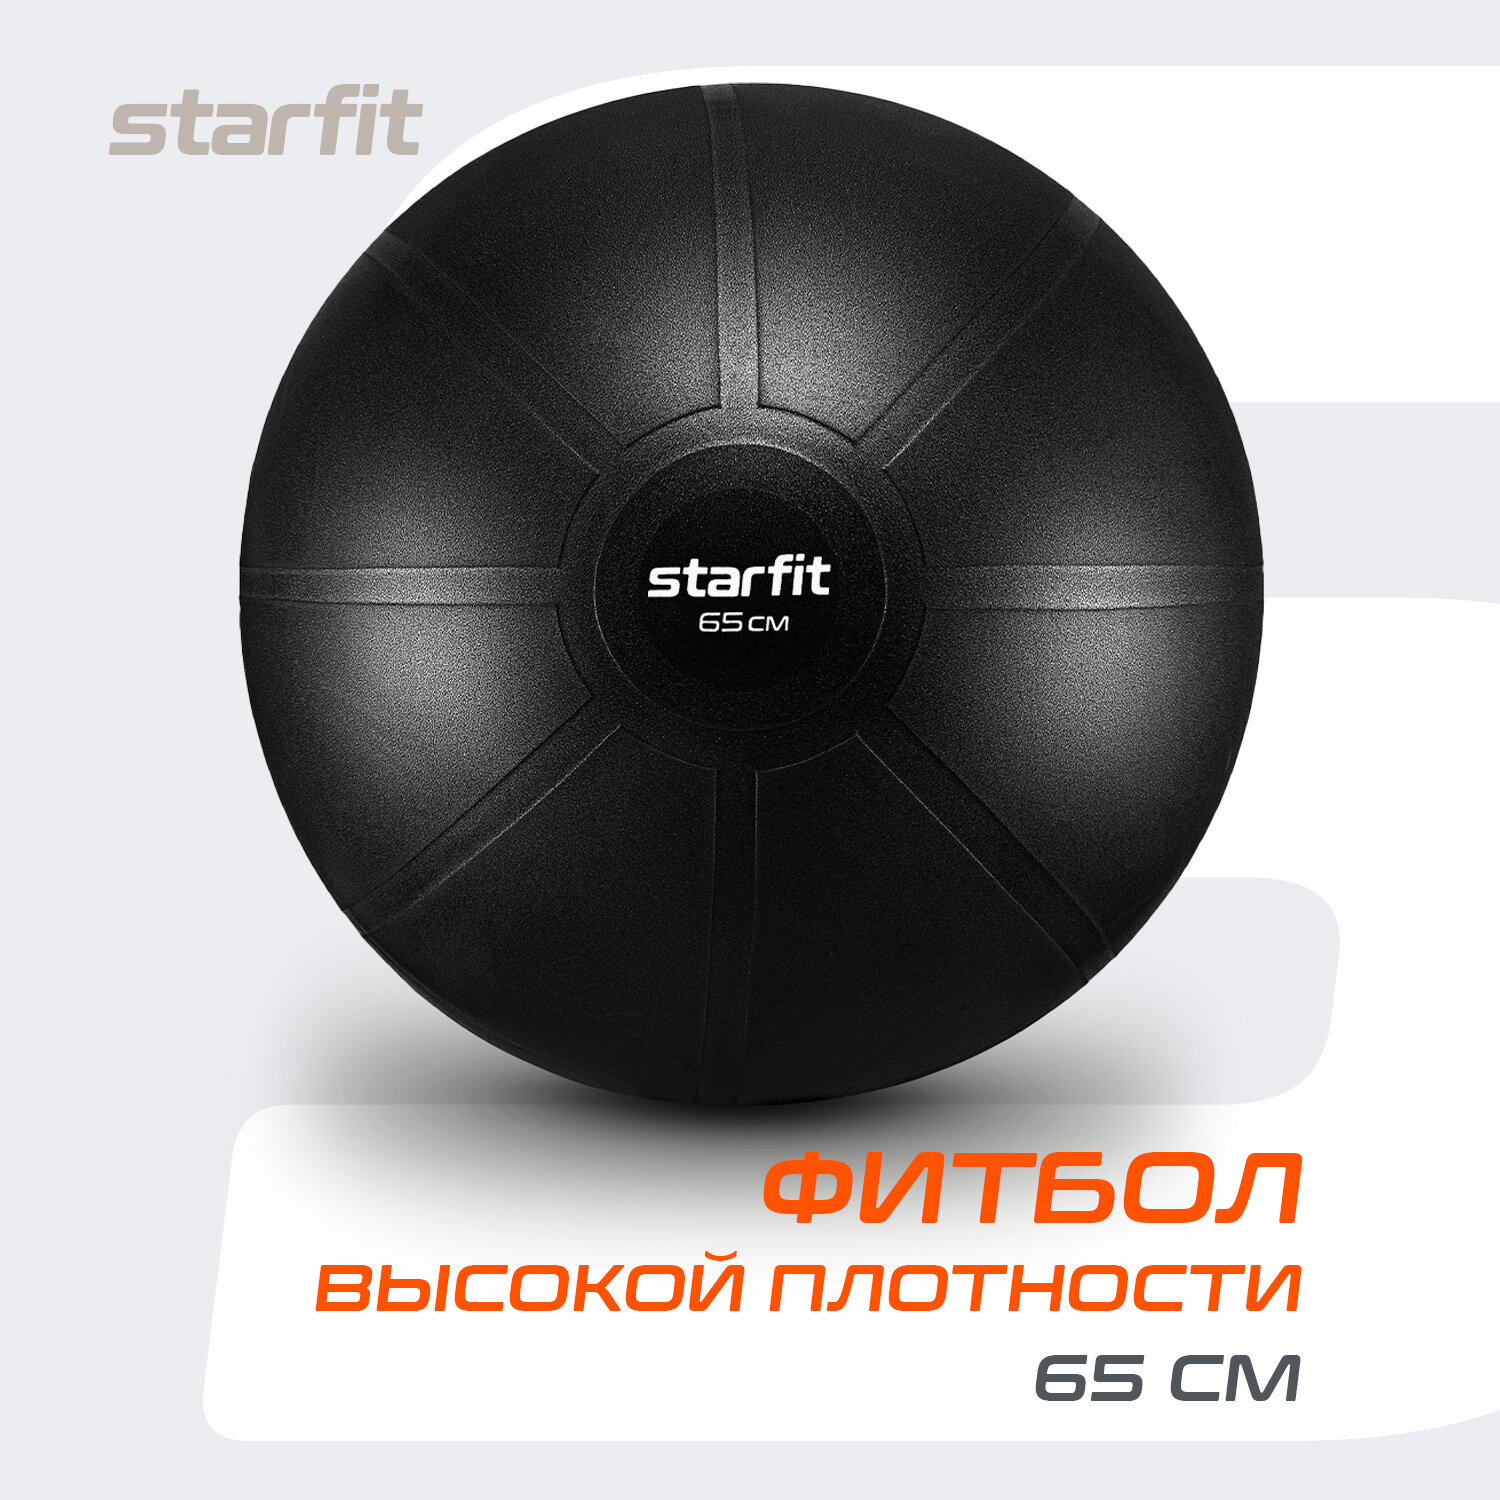 Фитбол высокой плотности STARFIT GB-110 65 см, 1200 гр, антивзрыв, черный